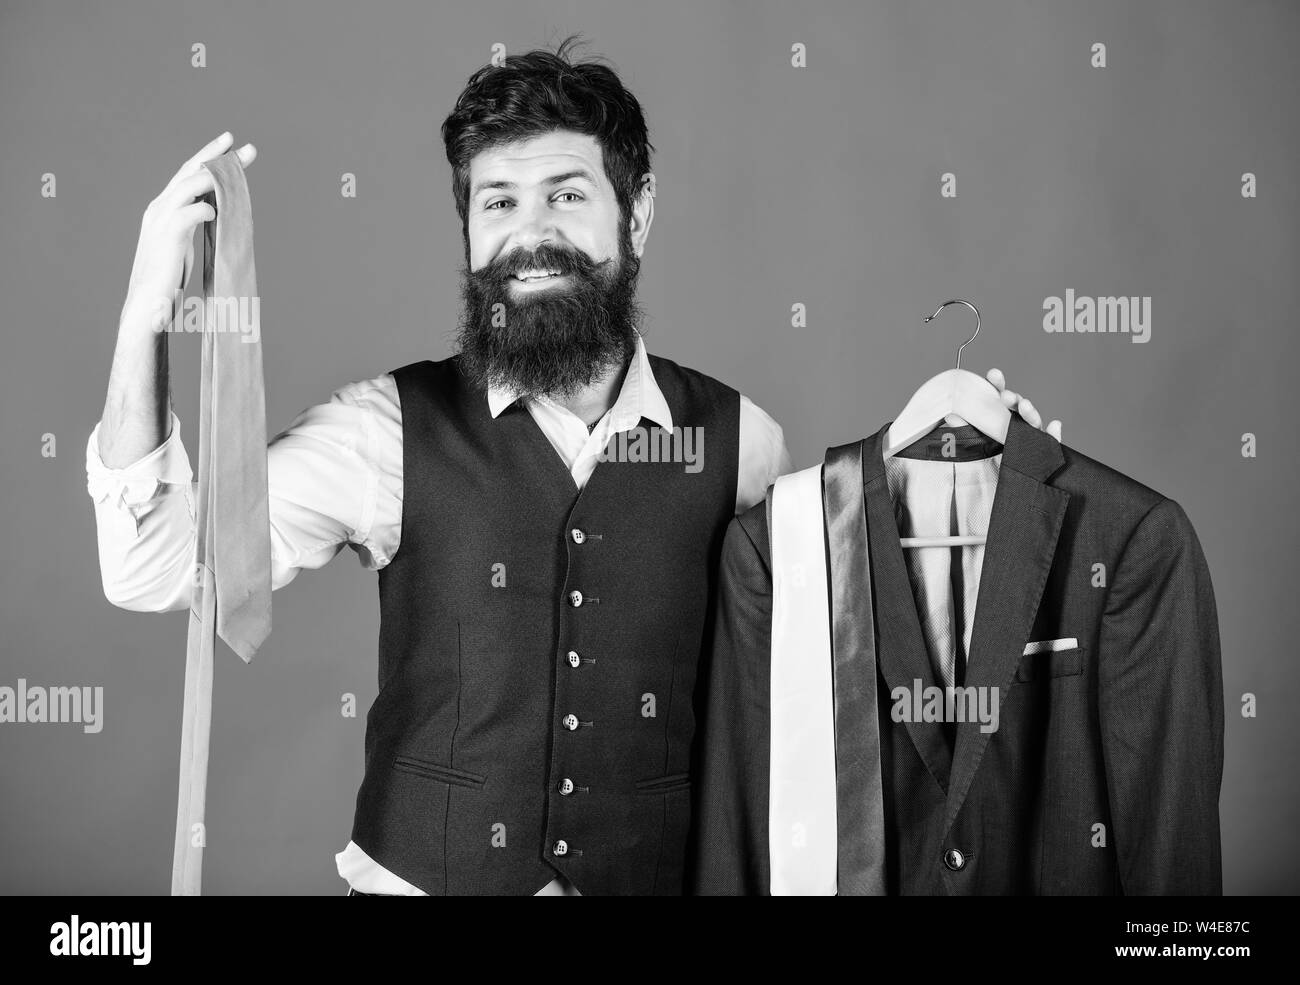 Alternative fashion Foto e Immagini Stock in Bianco e Nero - Alamy